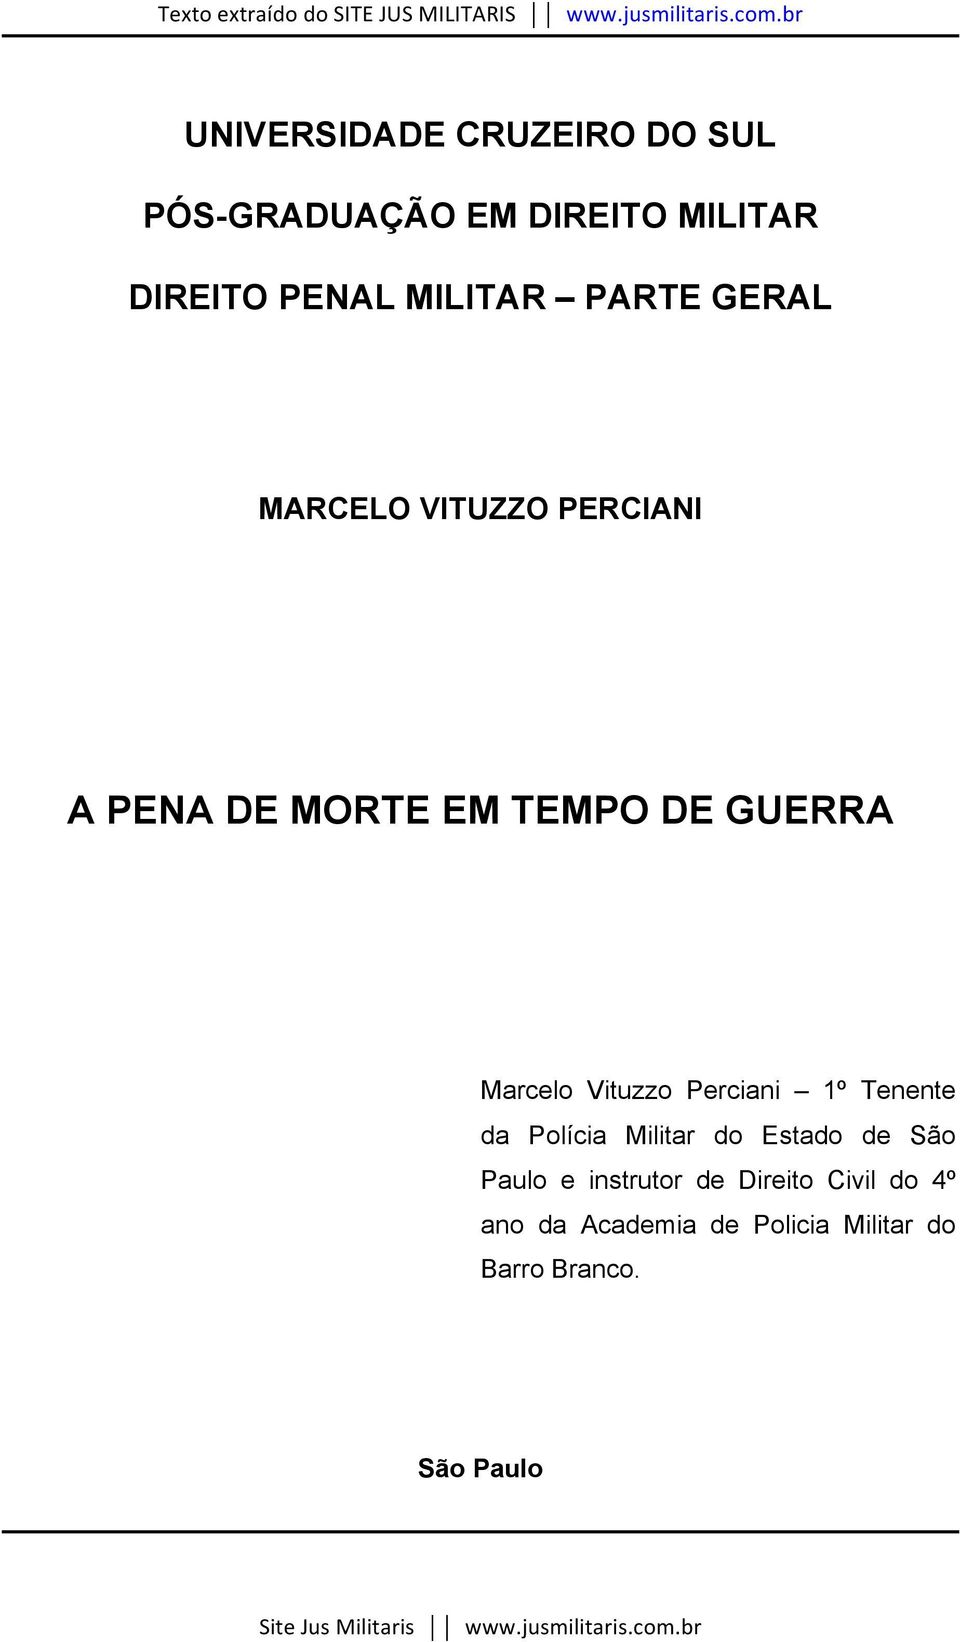 Marcelo Vituzzo Perciani 1º Tenente da Polícia Militar do Estado de São Paulo e